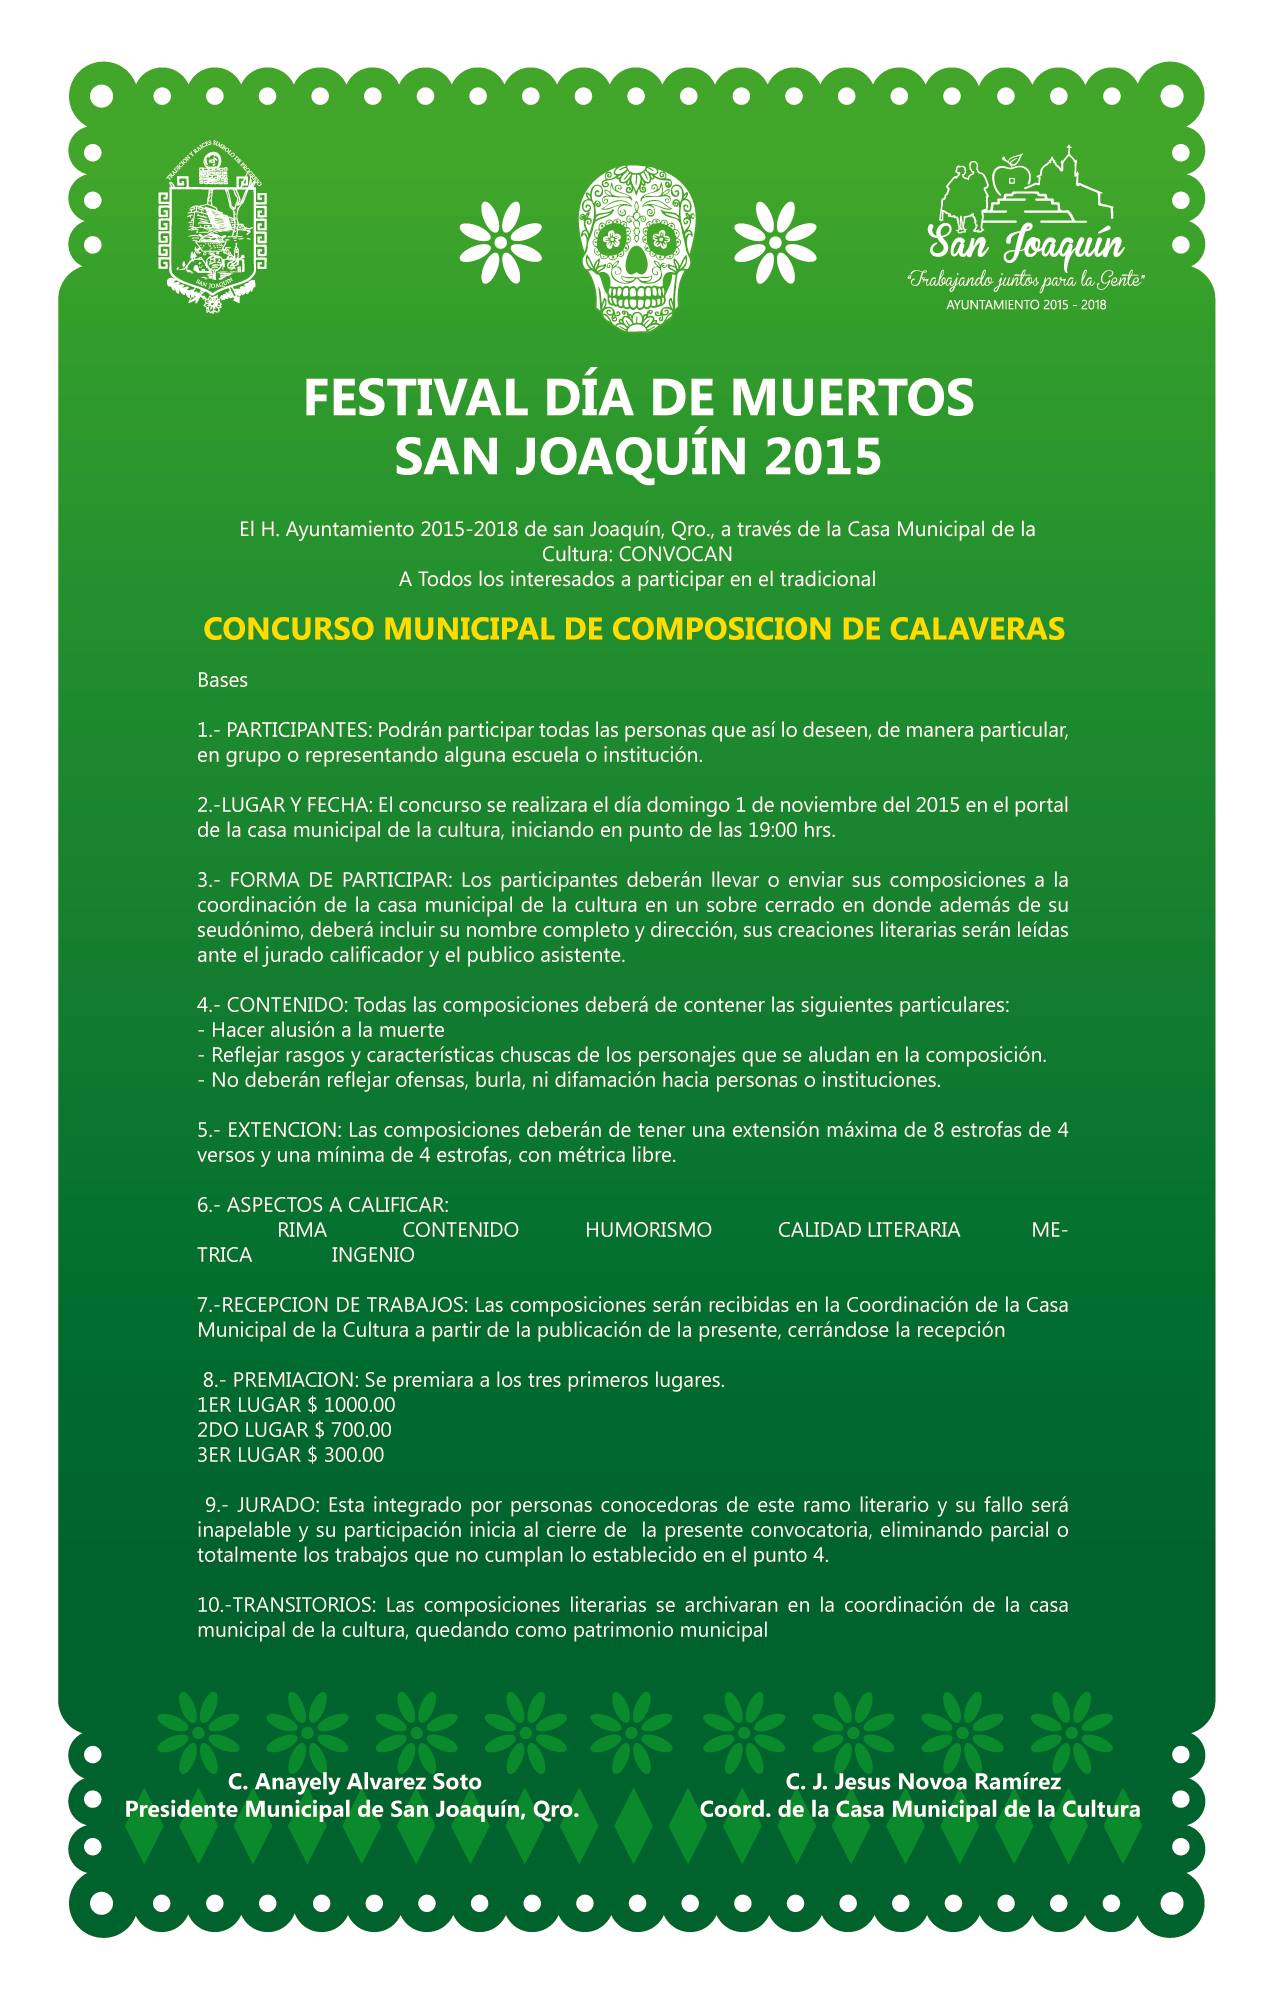 Festival de Muertos 2015 San Joaquín, Qro. 2015